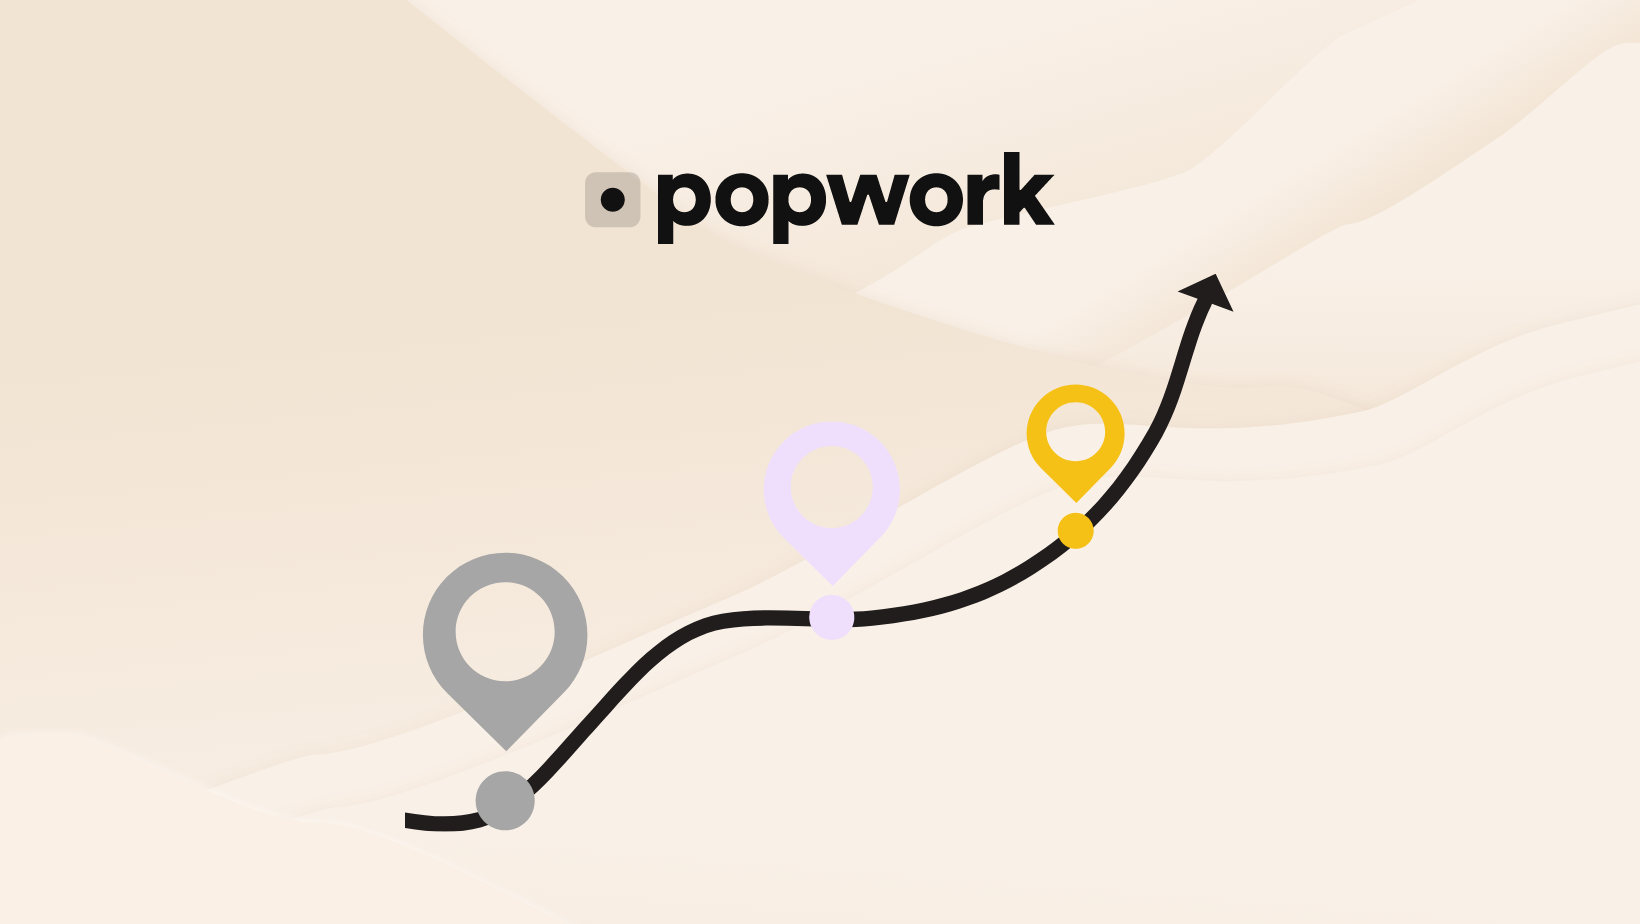 Popwork product roadmap